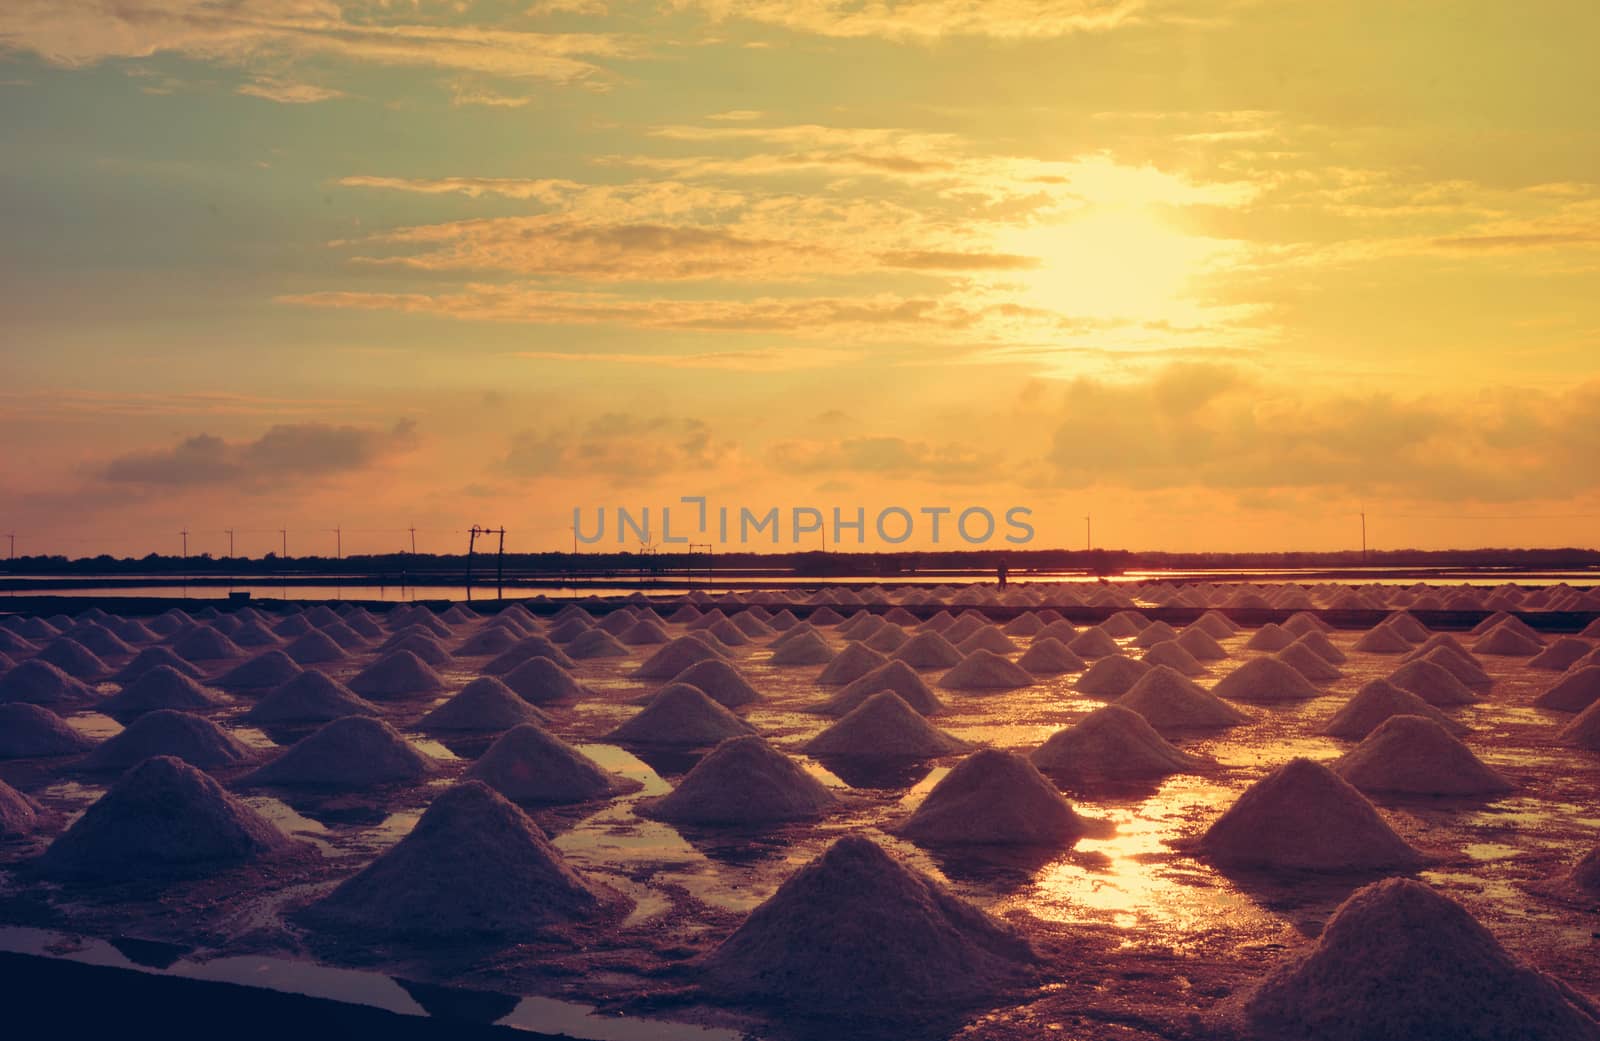 Salt pan or salt field,  Landscape of salt farming field in Sun rise by ideation90